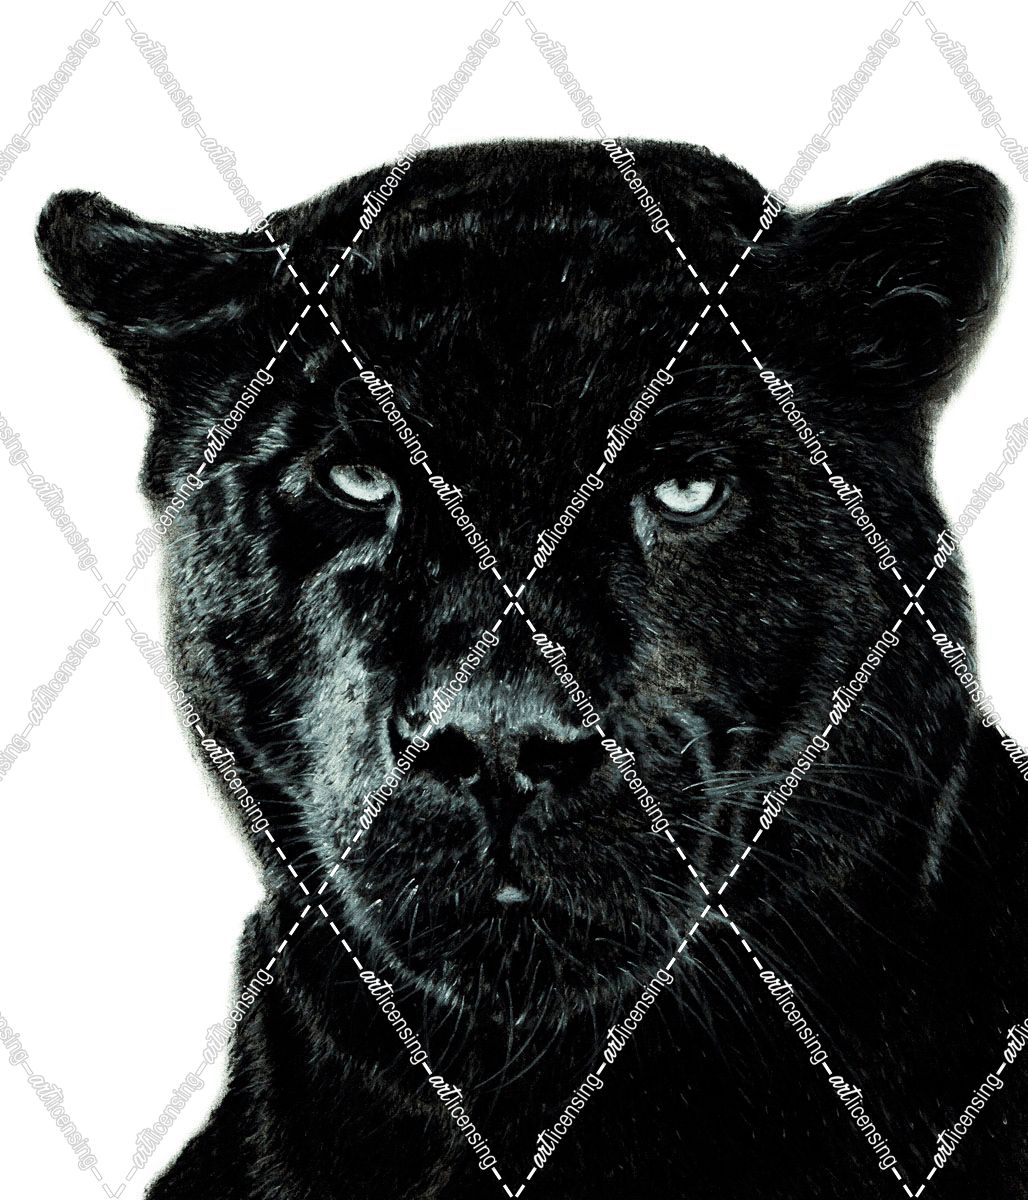 Black Panther 1